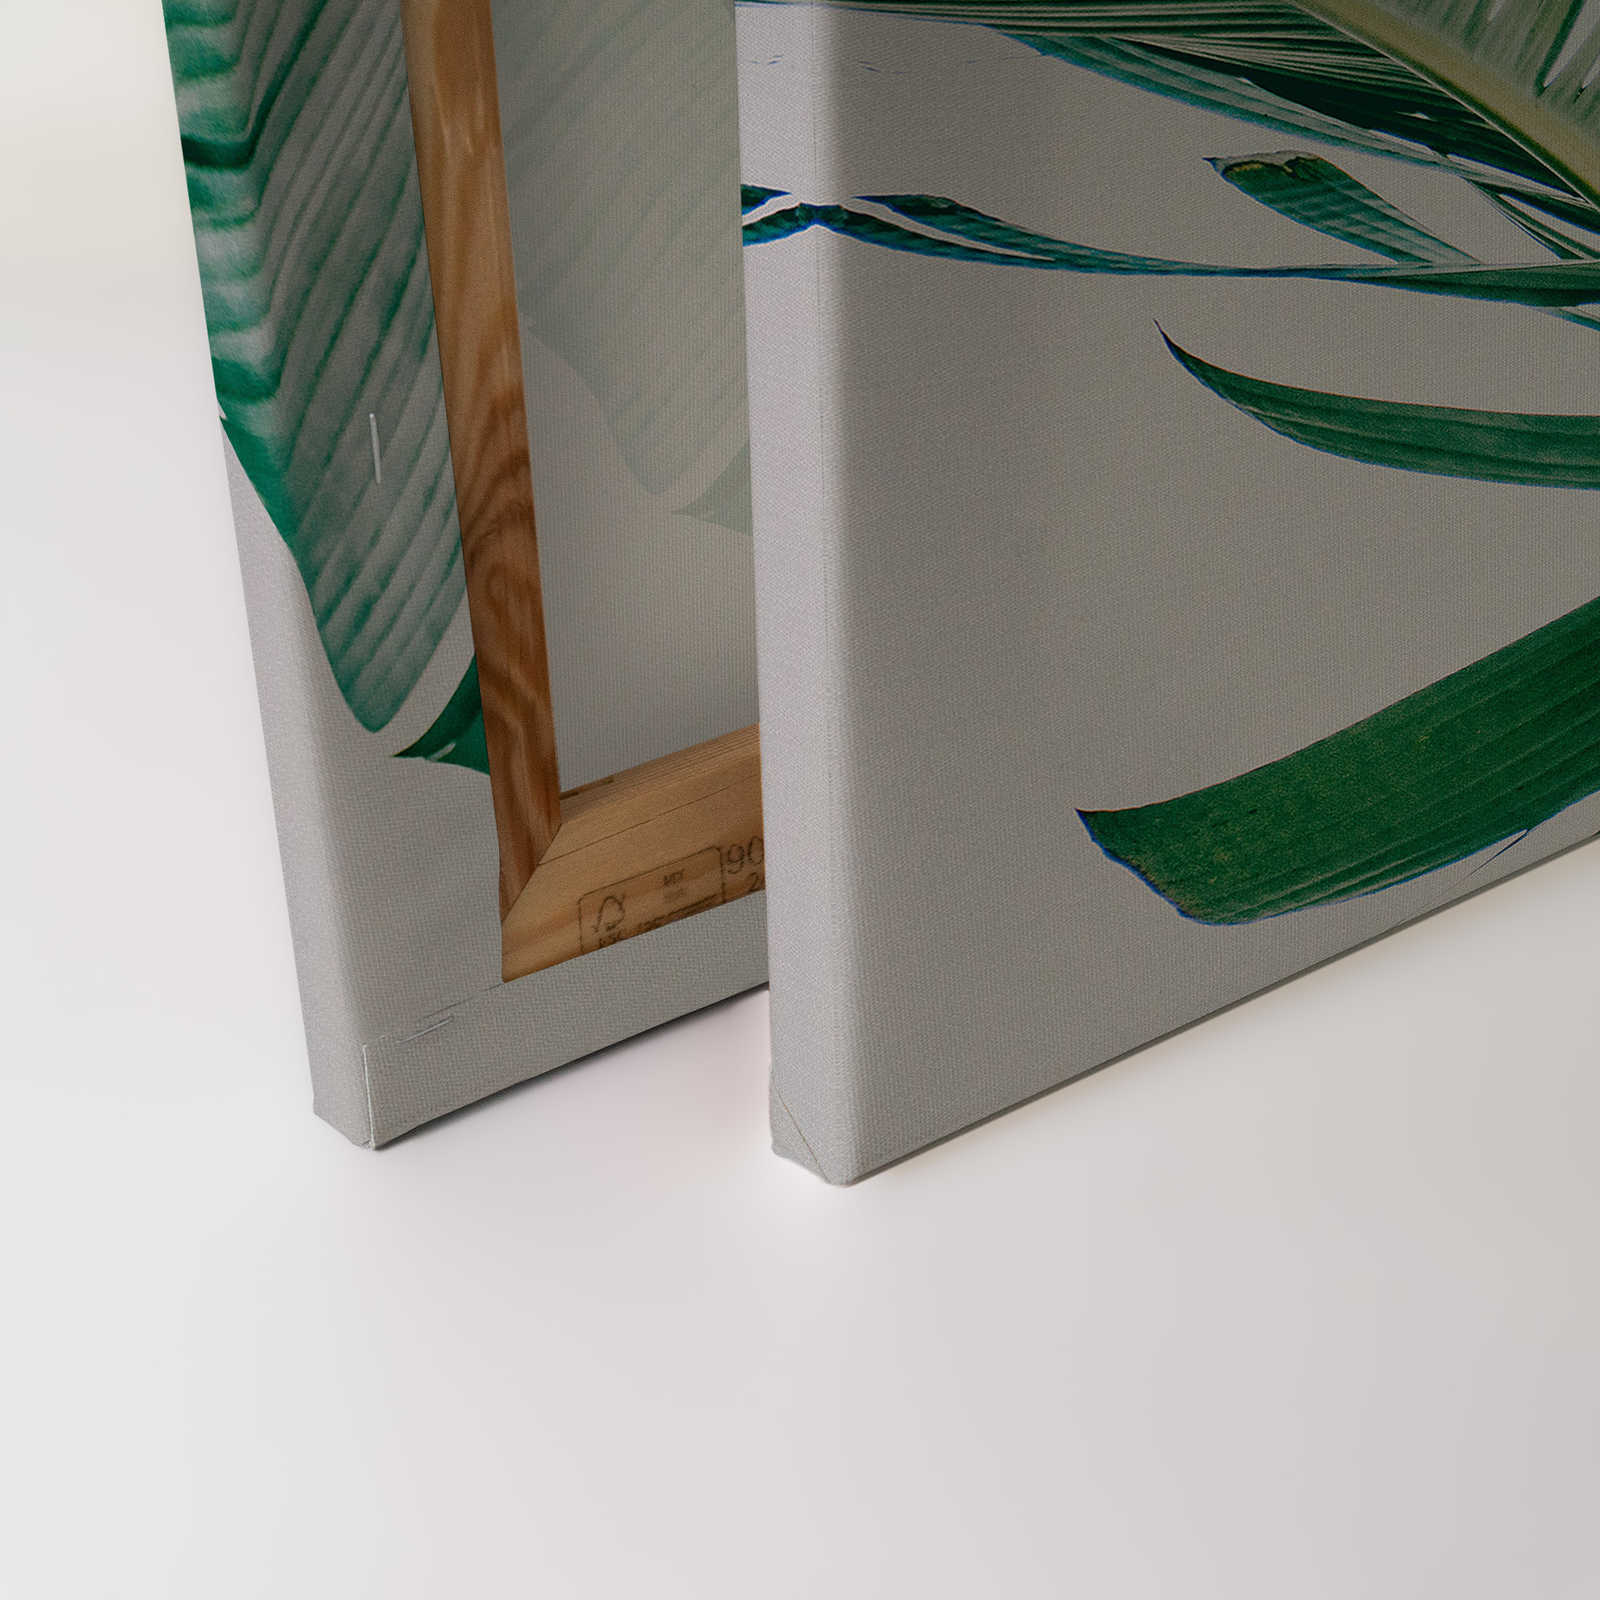             Leinwandbild mit Palmenblättern natürliches Motiv – 0,90 m x 0,60 m
        